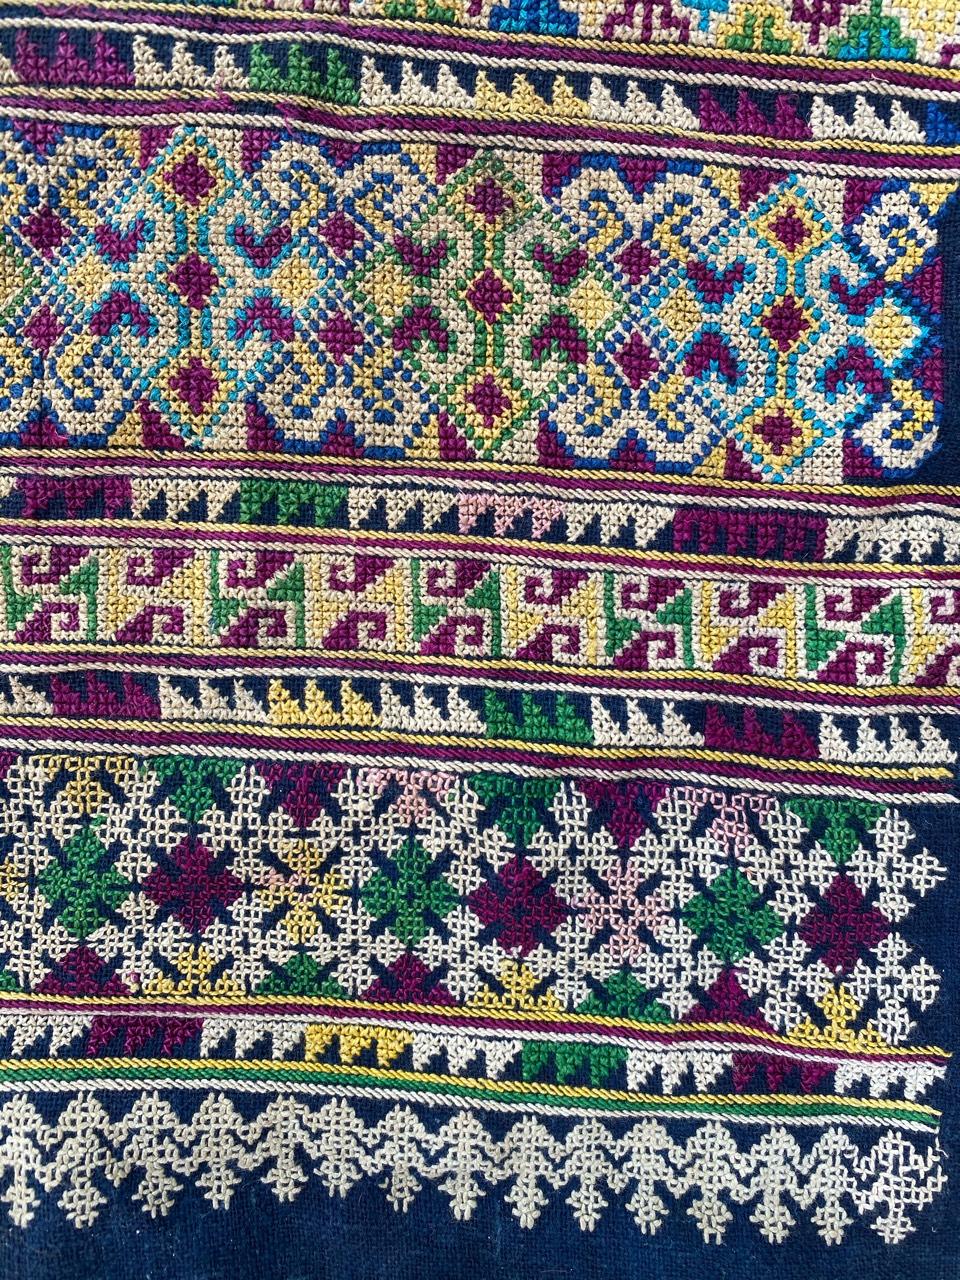 Très belle broderie du début du 20e siècle avec un motif tribal et de belles couleurs, entièrement brodée à la main avec de la soie sur du coton.